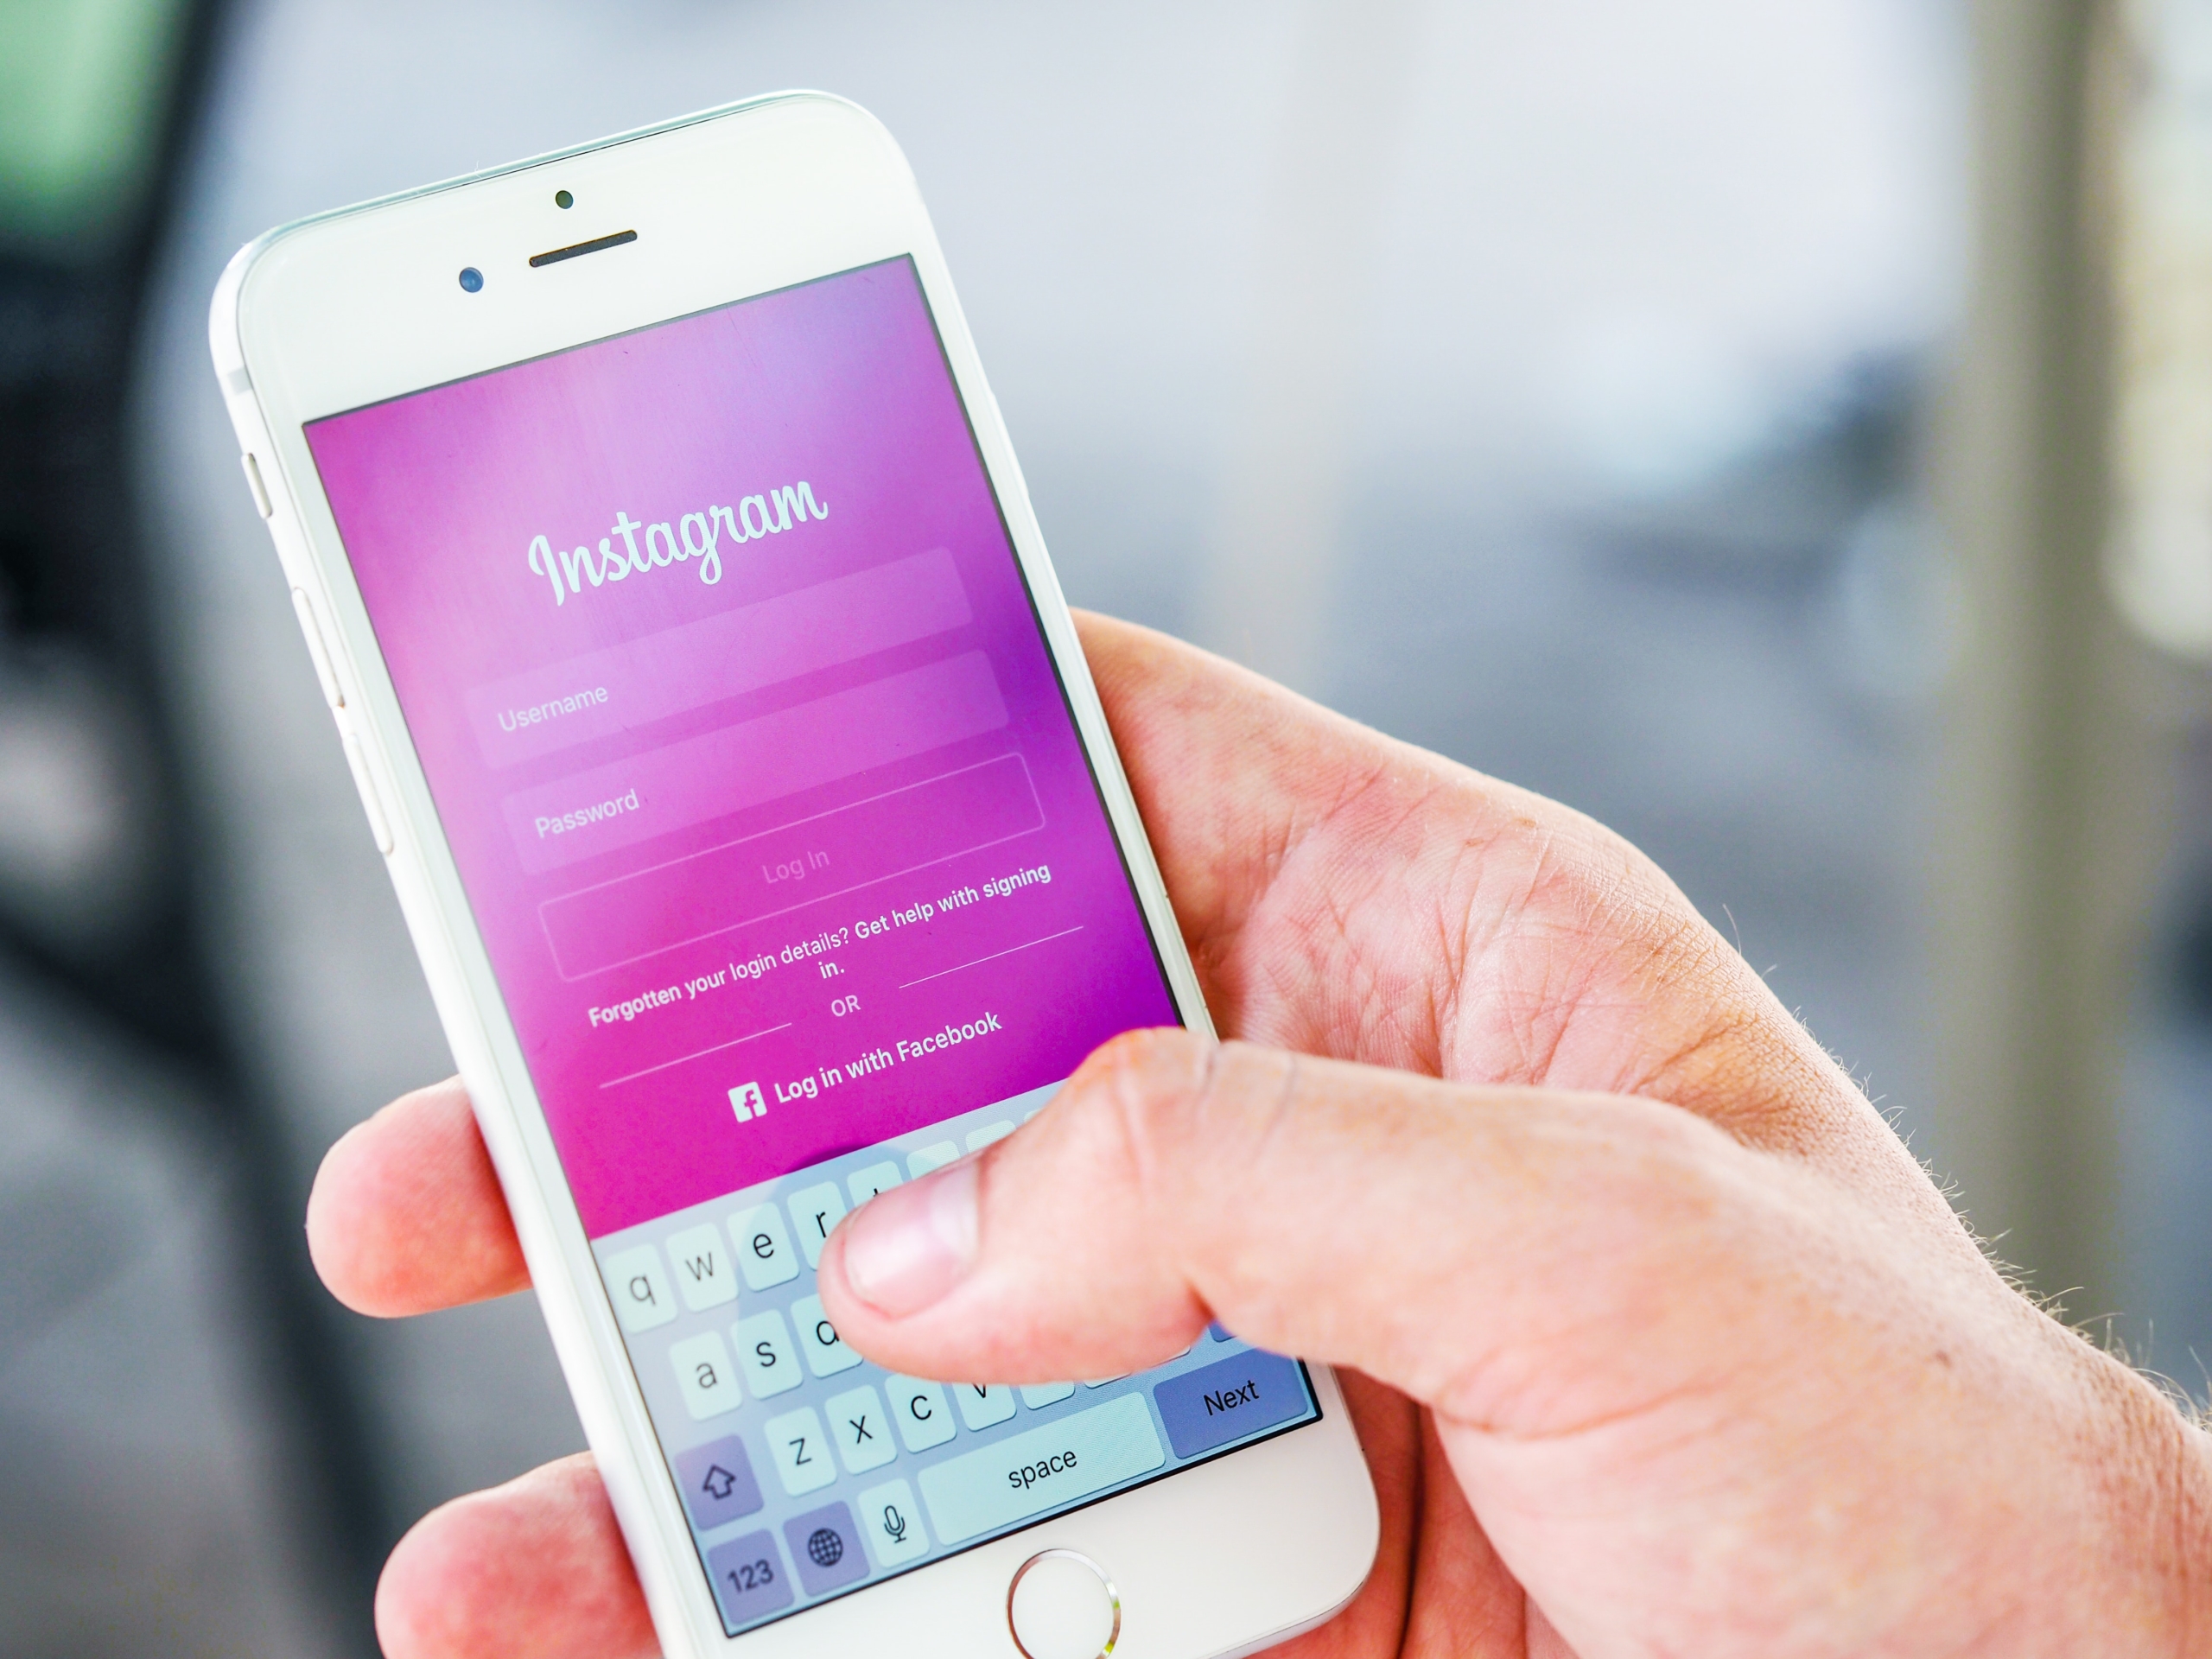 Ritorno alla privacy per gli utenti Instagram dopo la rimozione dell'app Ghosty